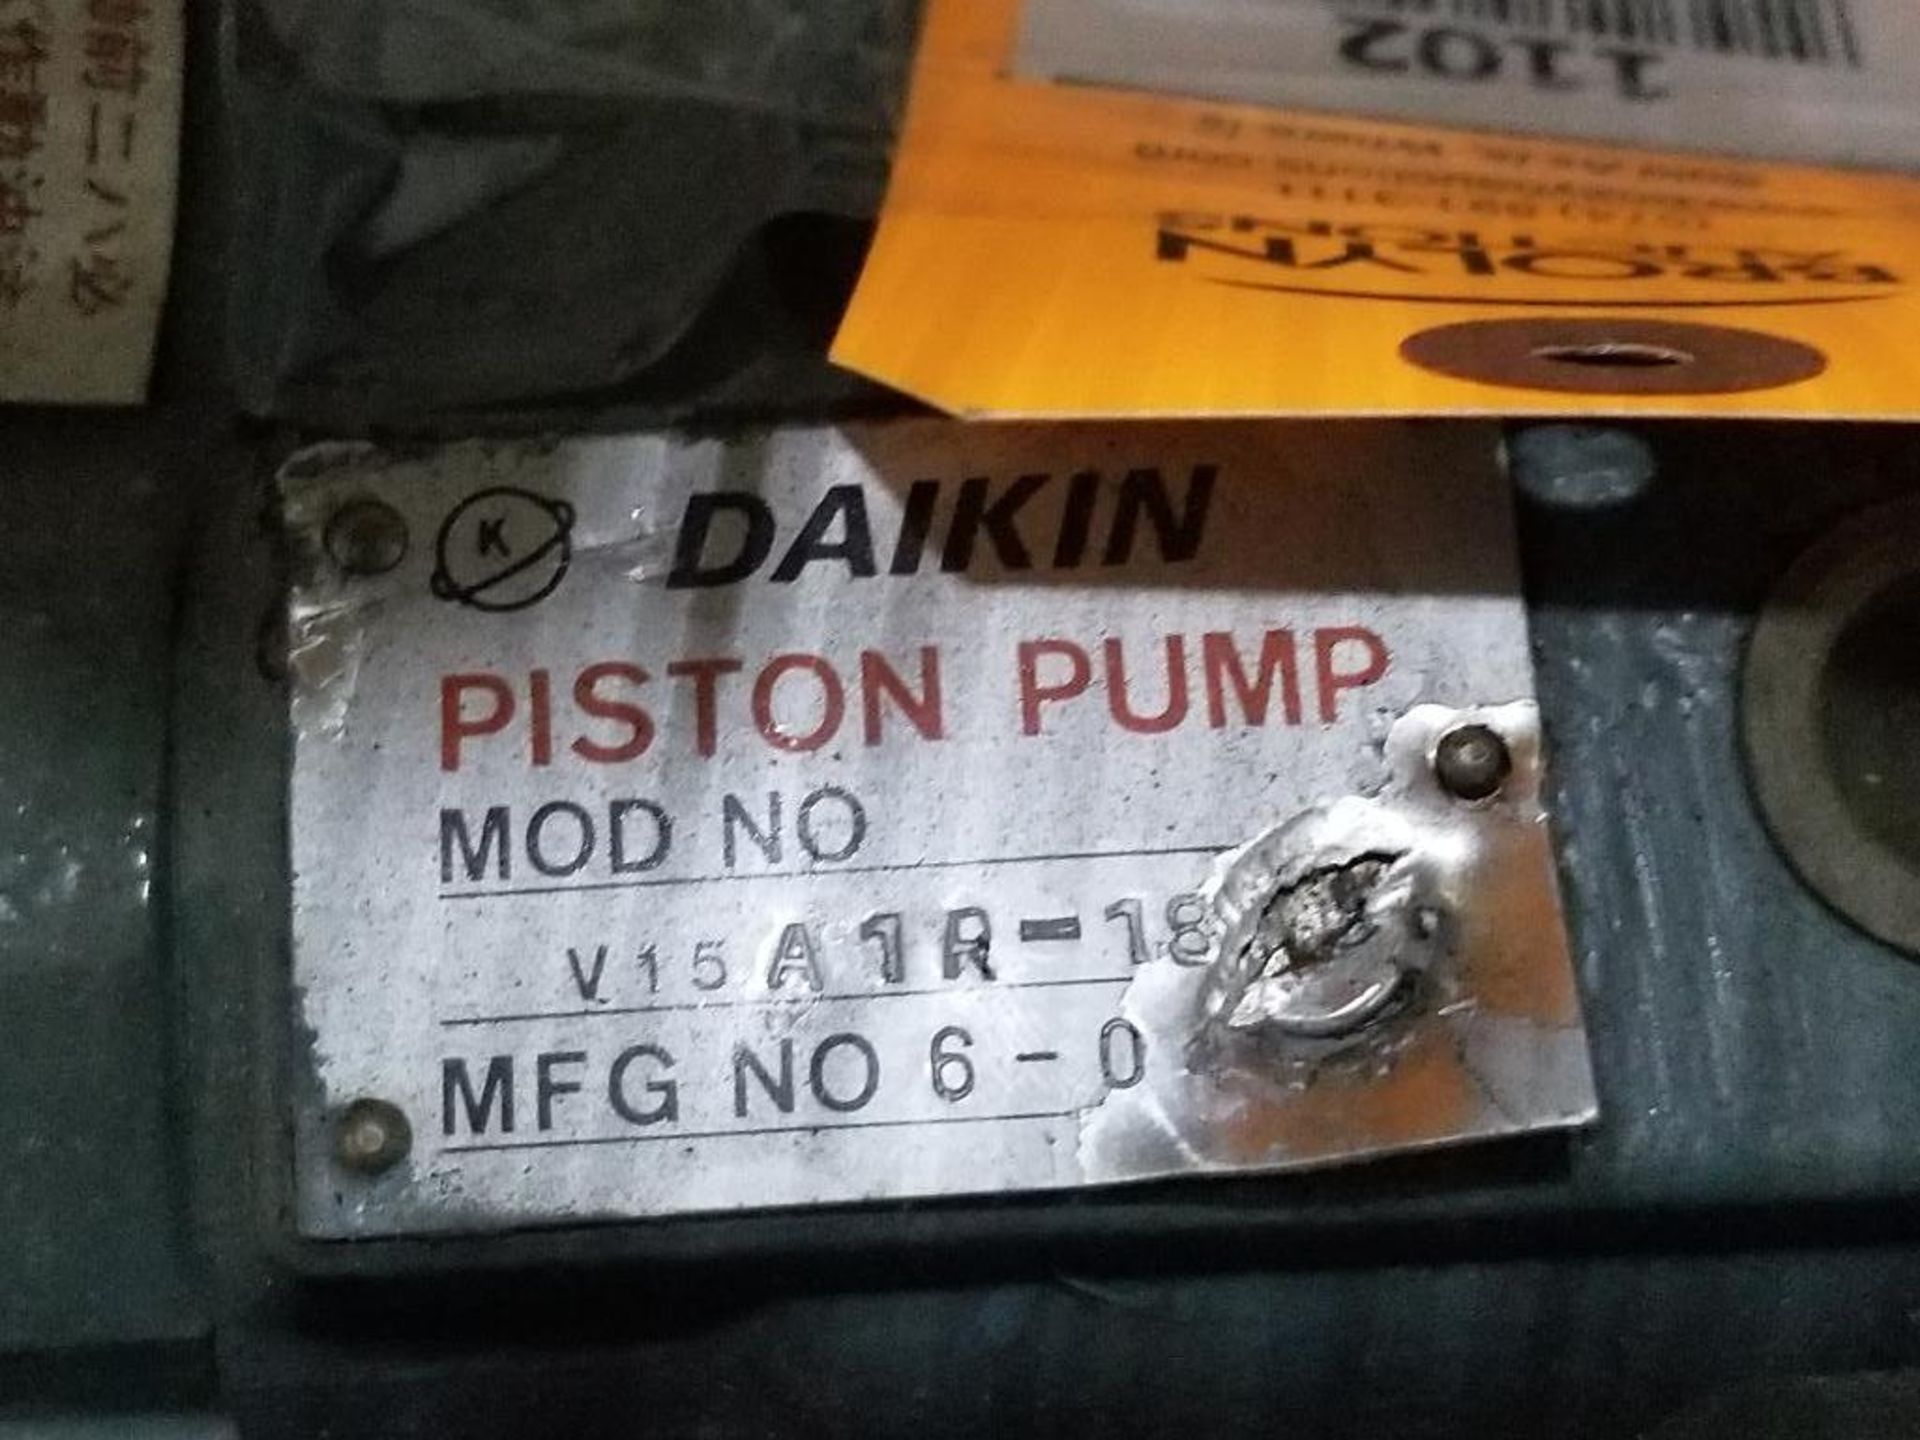 Daikin Piston Pump hydraulic pump. Model V15A1R-18. - Image 2 of 2